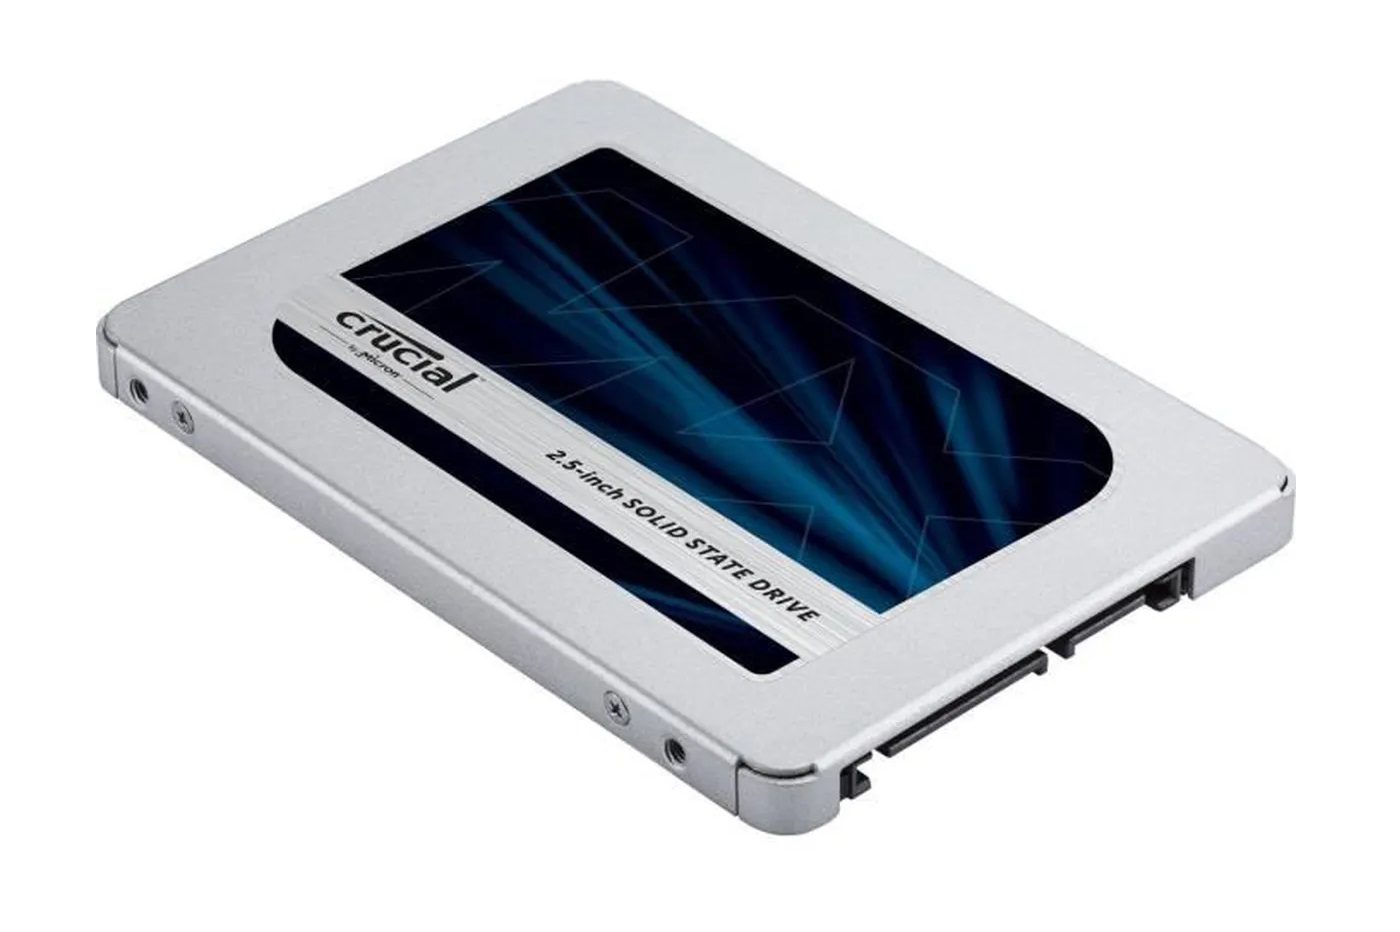 Ce disque SSD interne Samsung à -36% passe à 44,99 euros chez